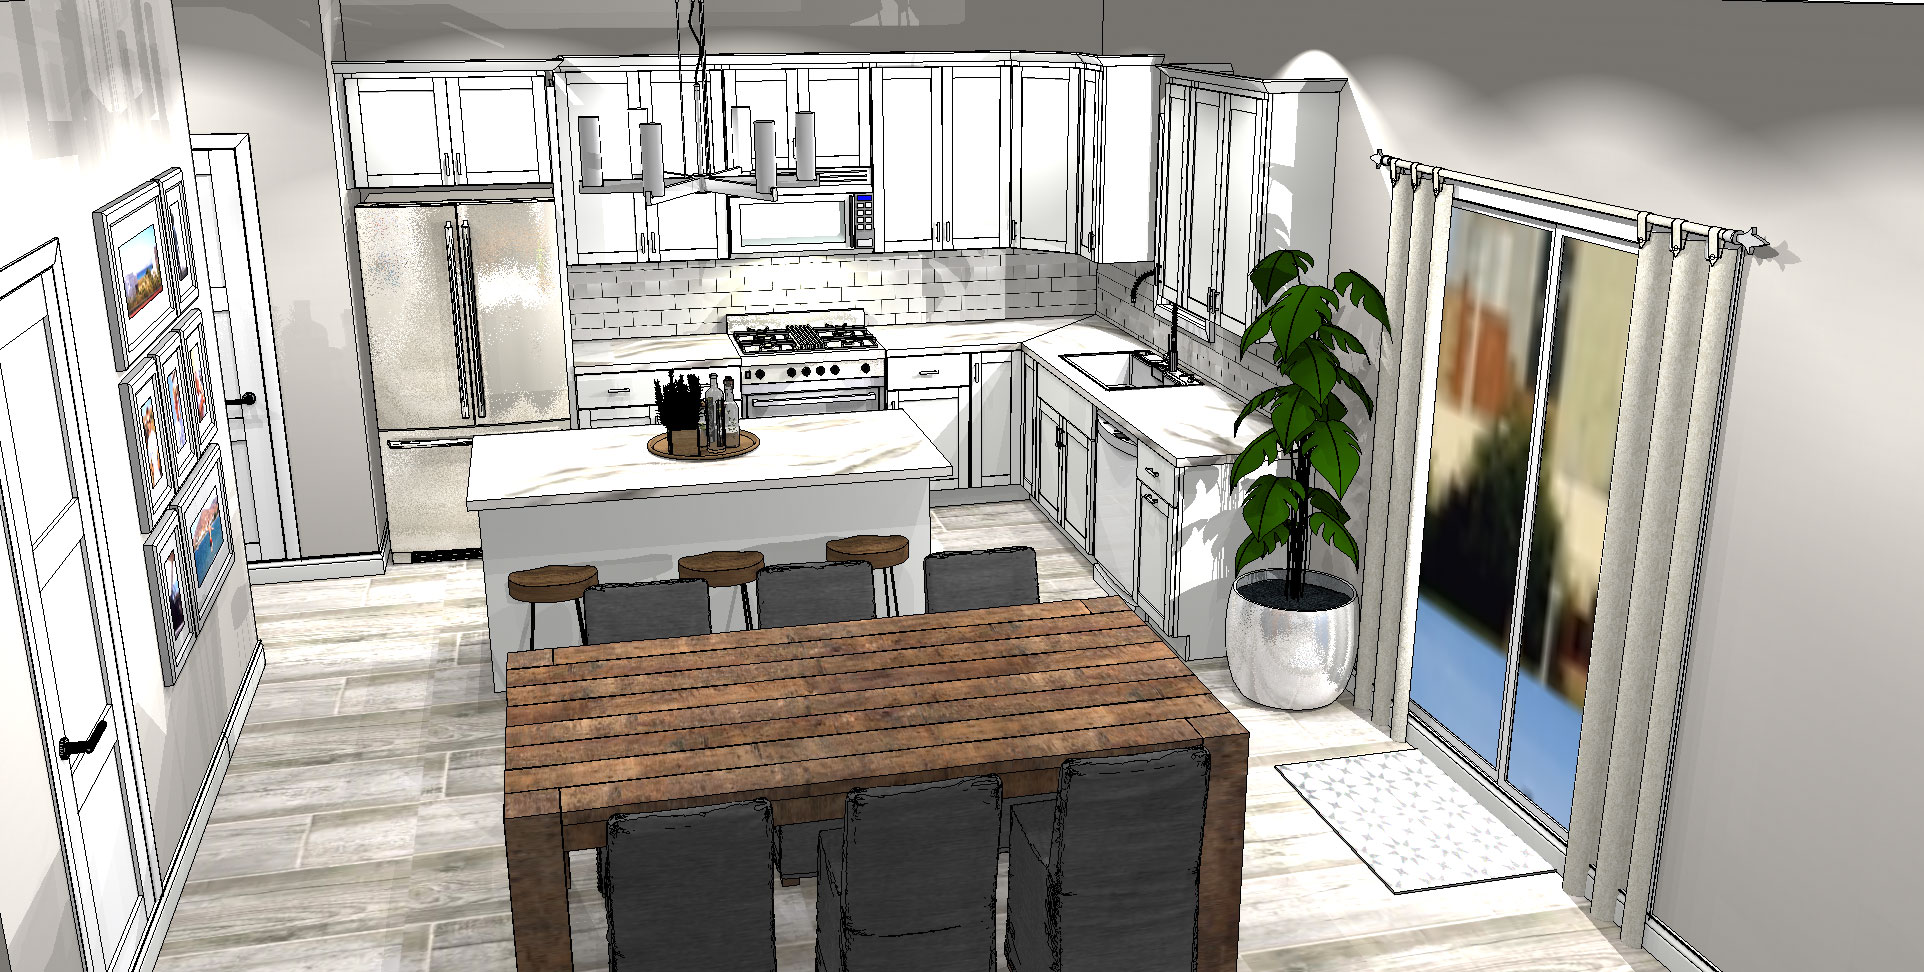 3D model of a home interior